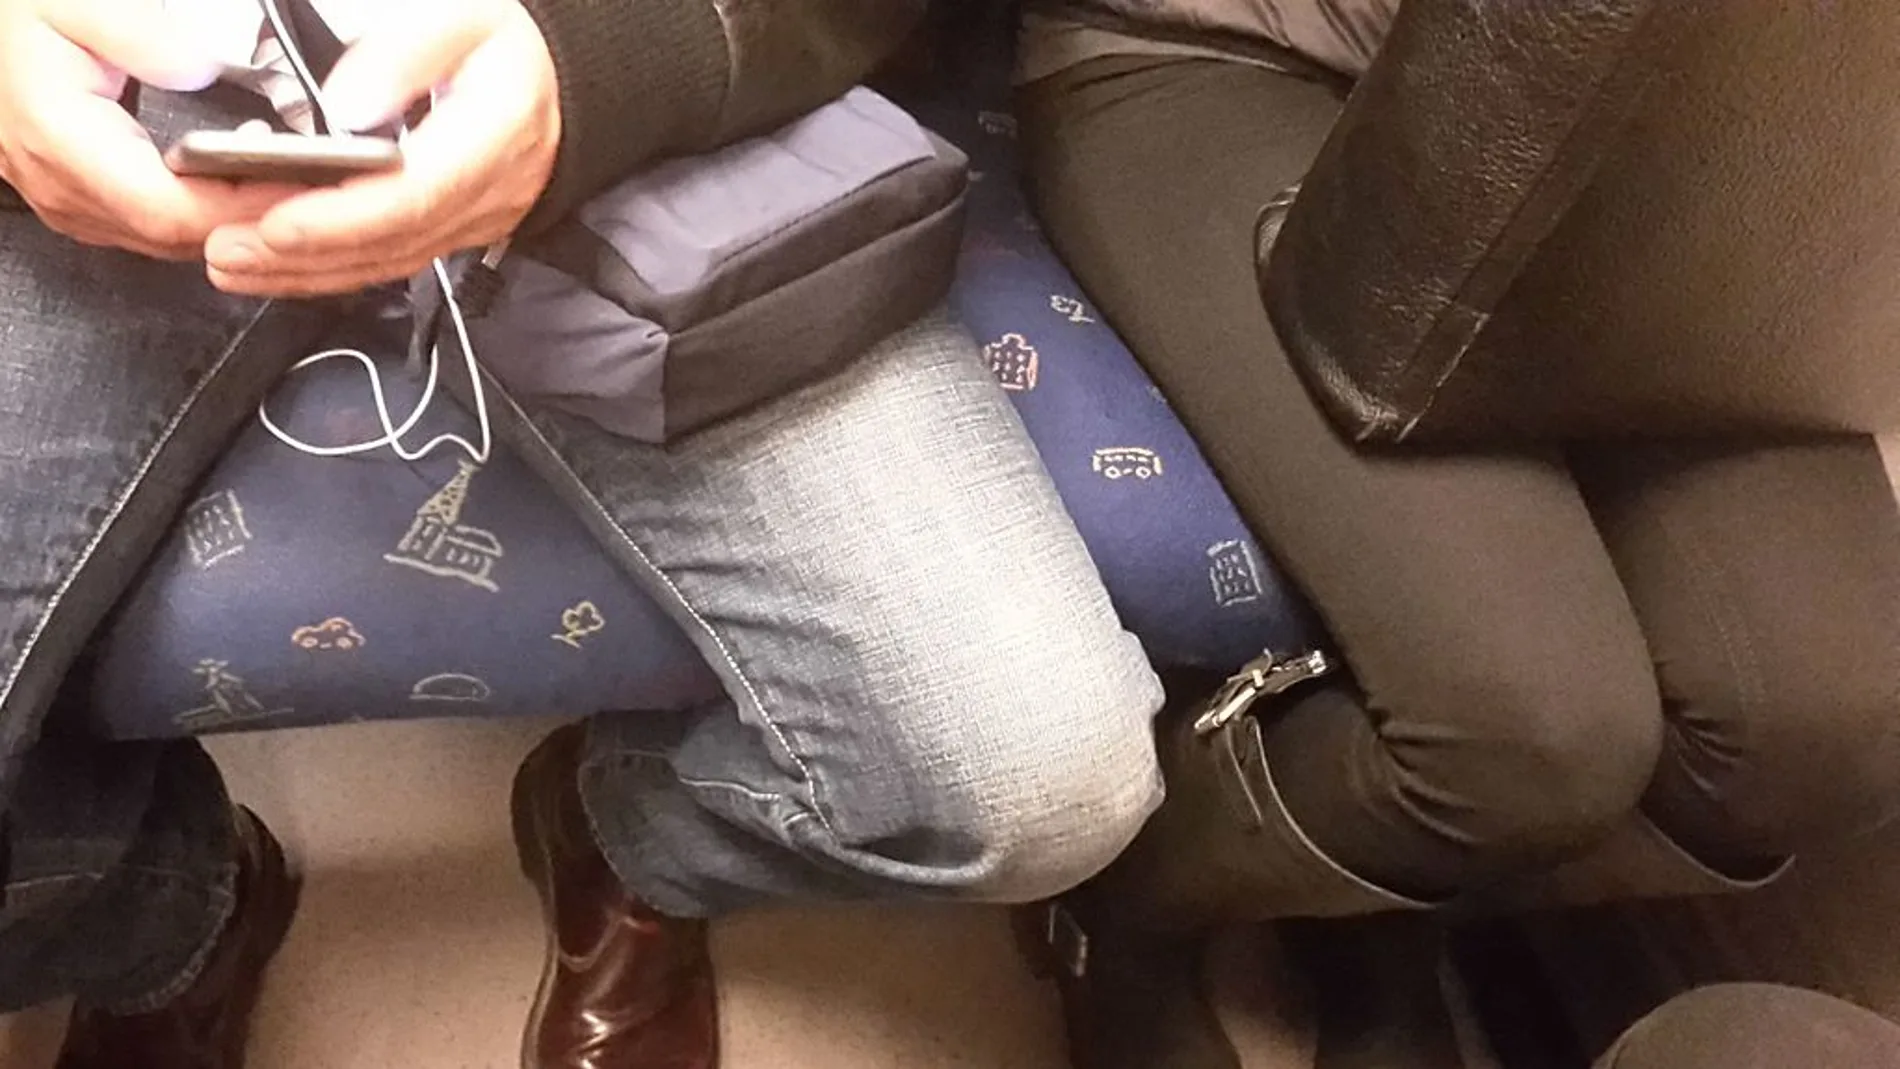 Algunos hombres tienden a sentarse con las piernas abiertas 'acorralando' al pasajero de al lado